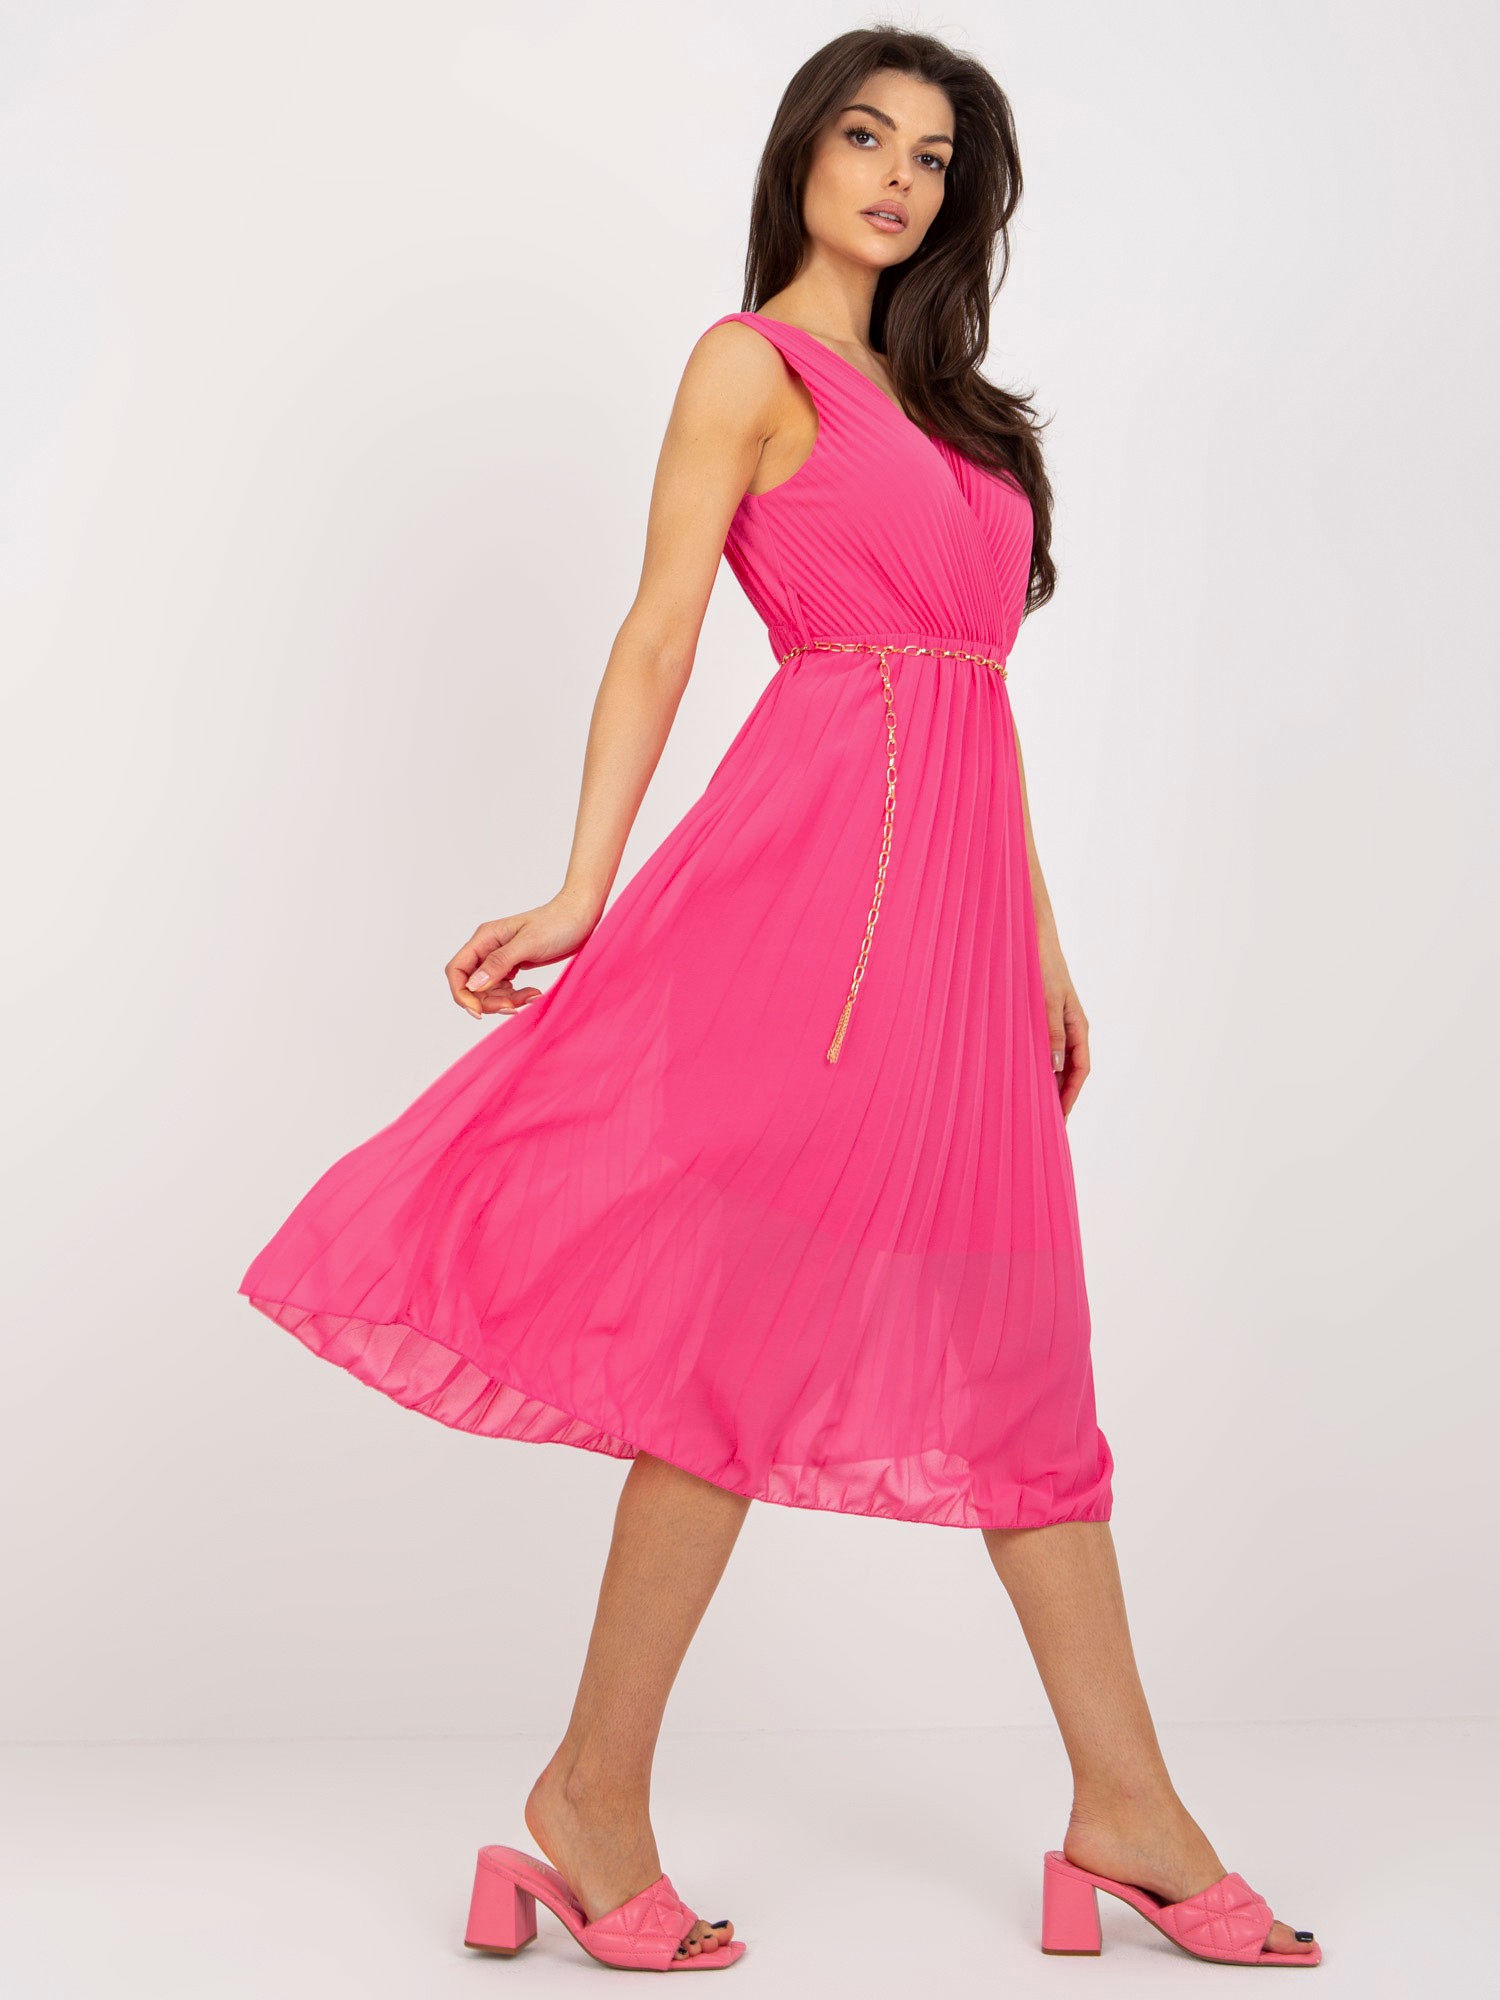 Dark pink pleated dress with clutch neckline